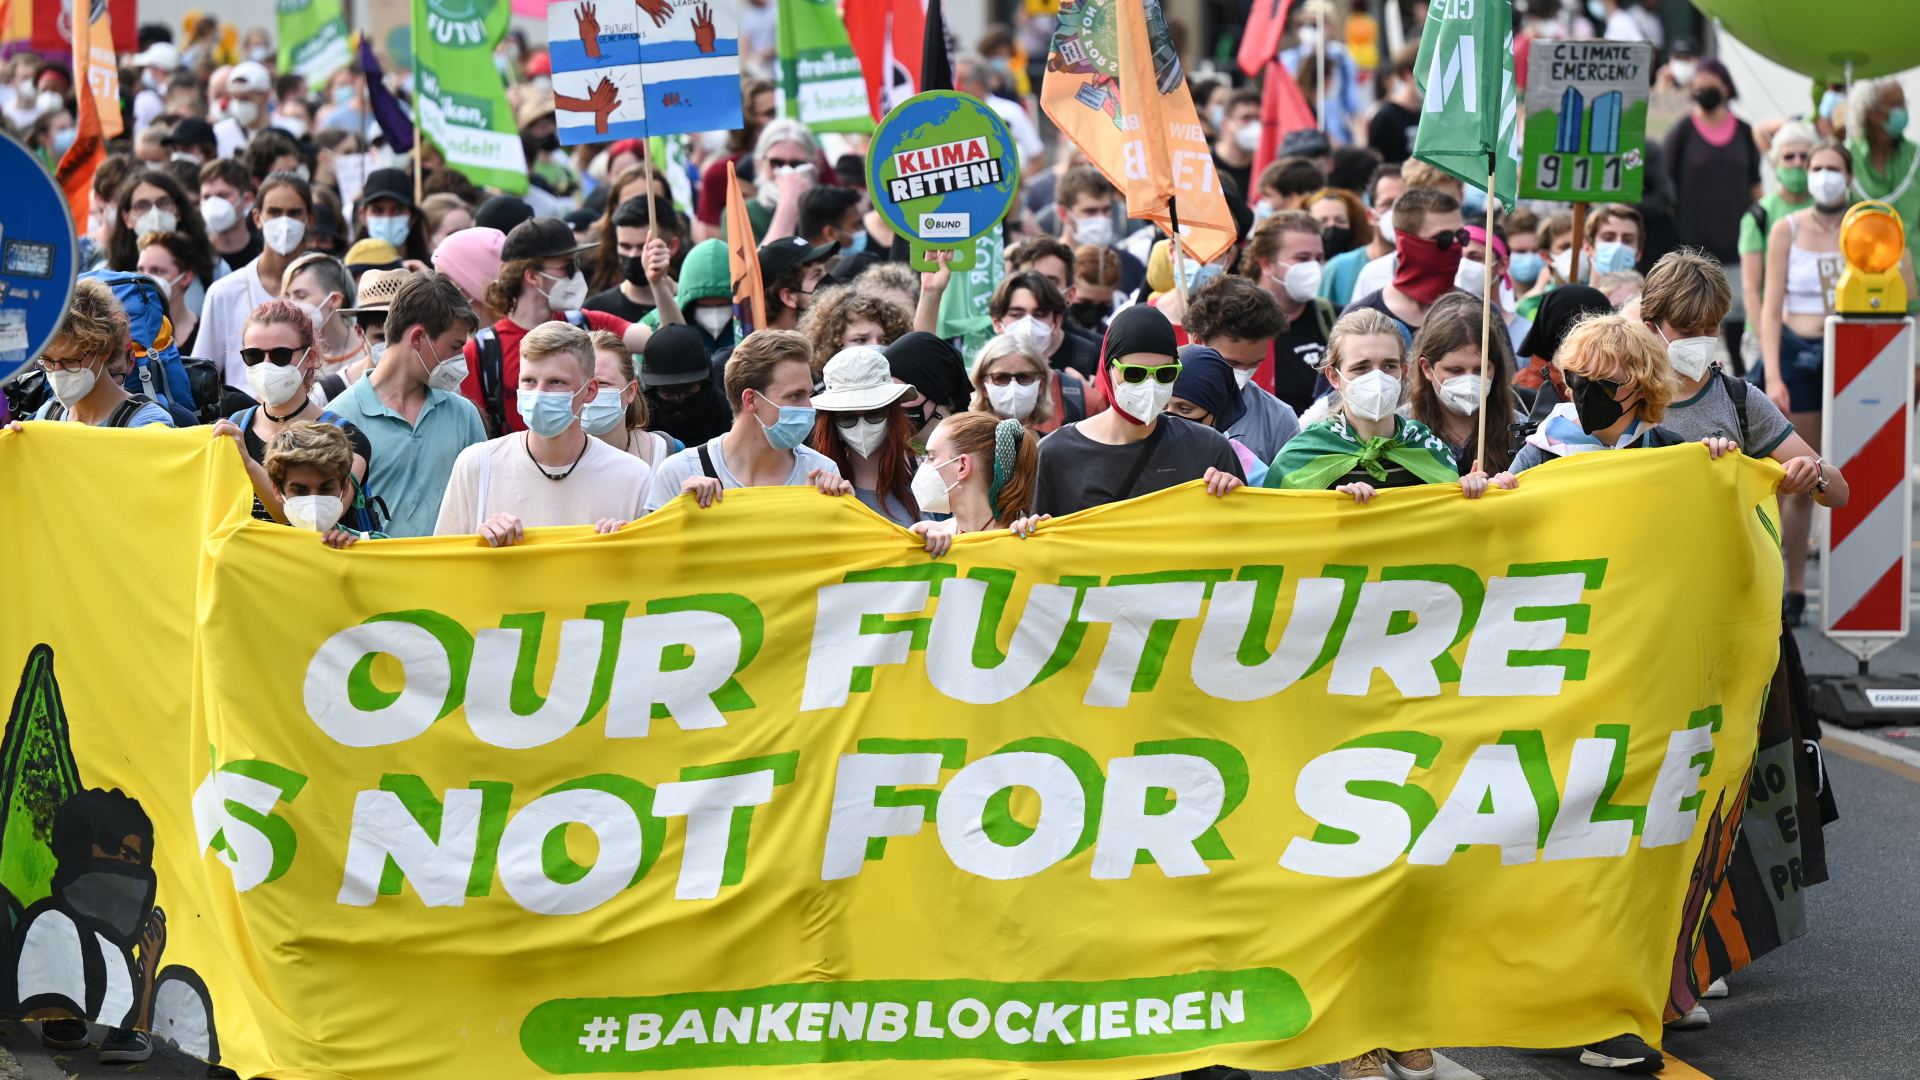 Demonstranten tragen beim zentralen Klimastreik von Fridays for Future während des Demonstrationszuges durch das Bankenviertel ein Plakat mit der Aufschrift "Our future is not for sale". | dpa